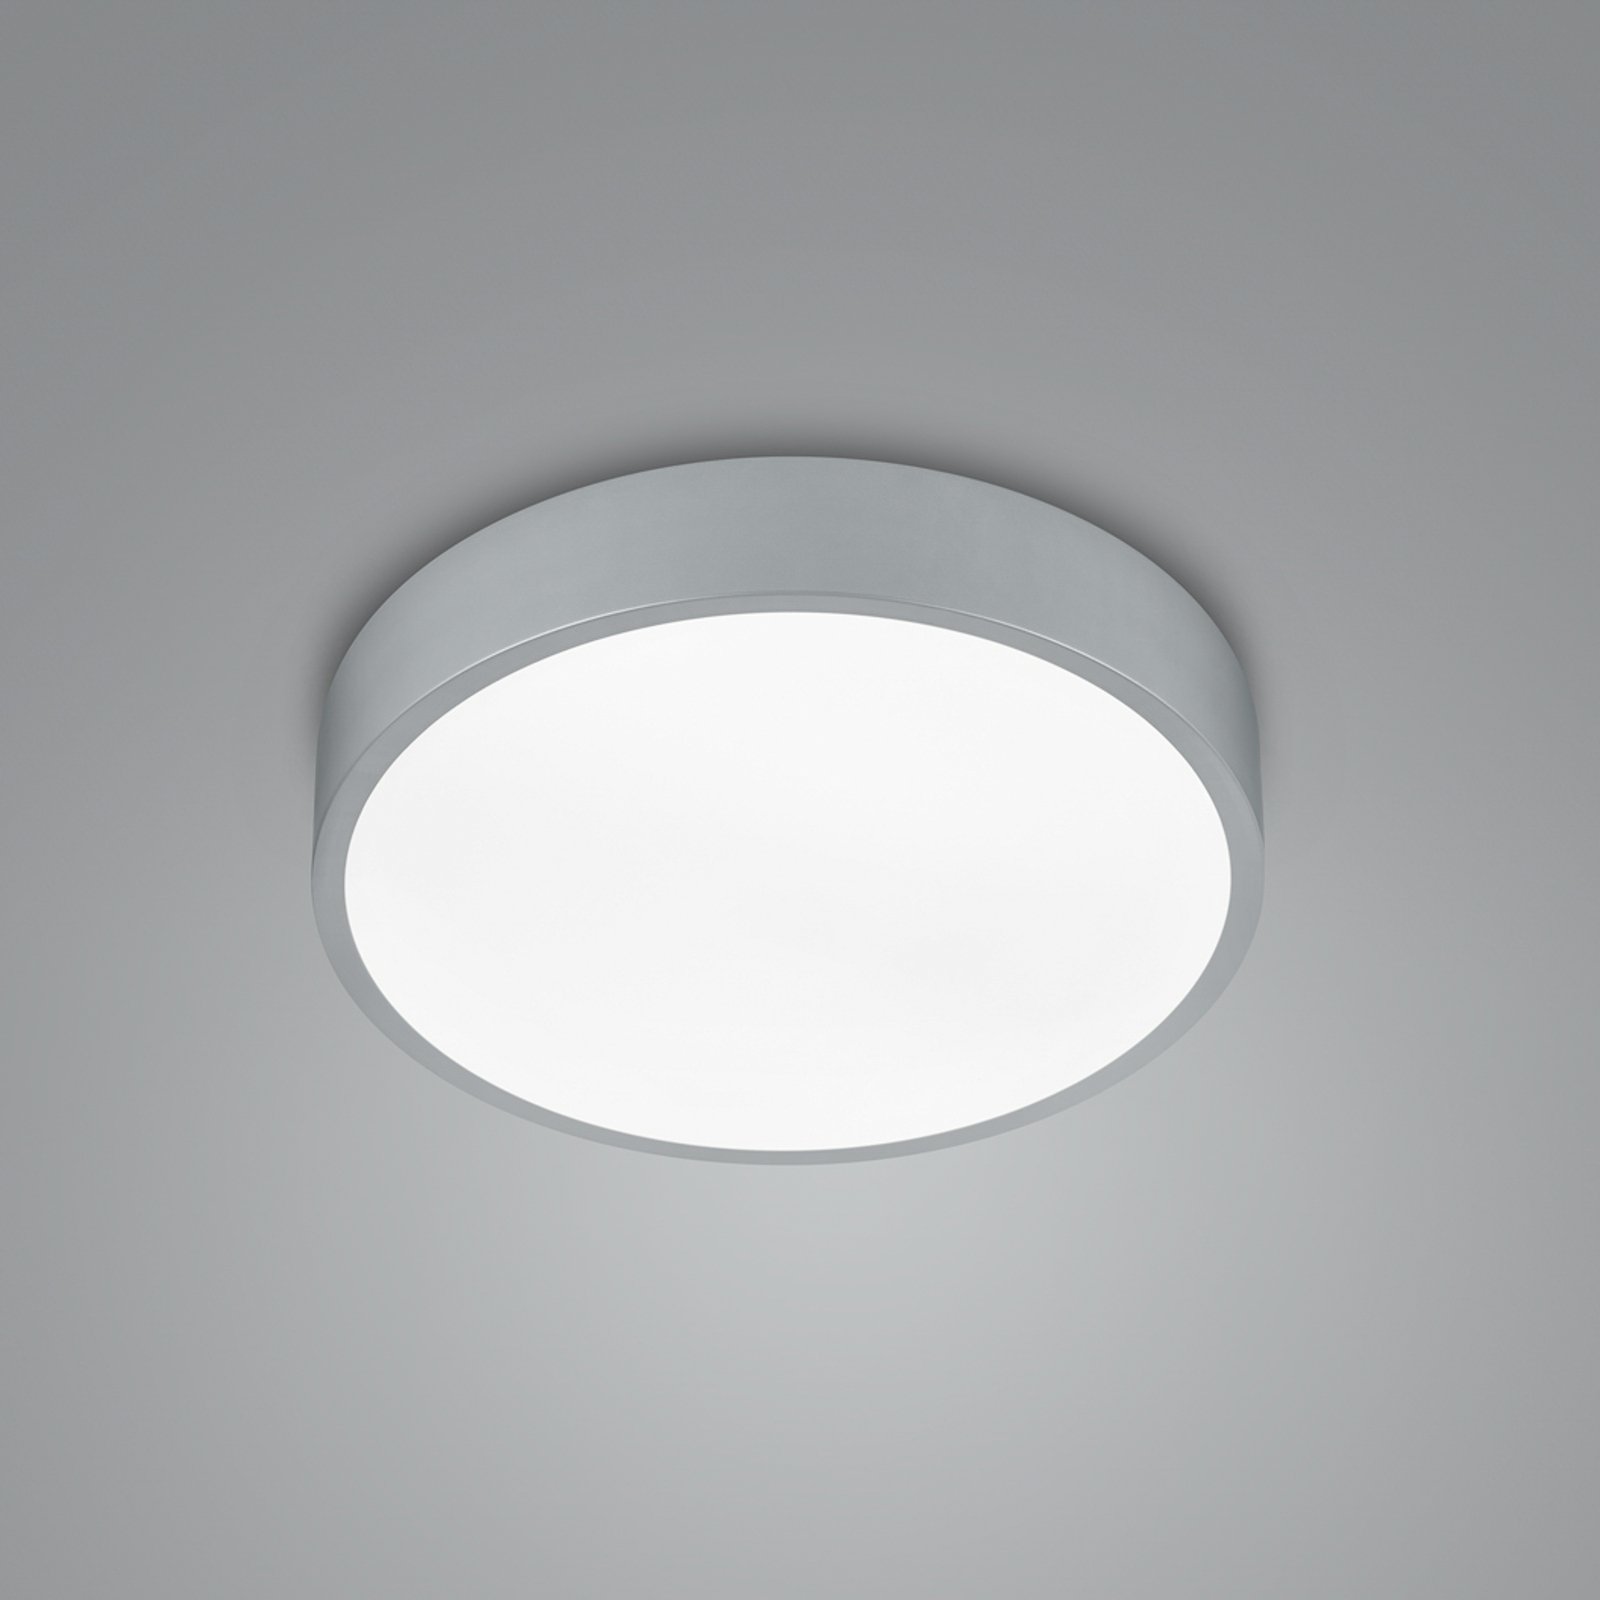 LED ceiling lamp Waco, CCT, Ø 31 cm, titanium